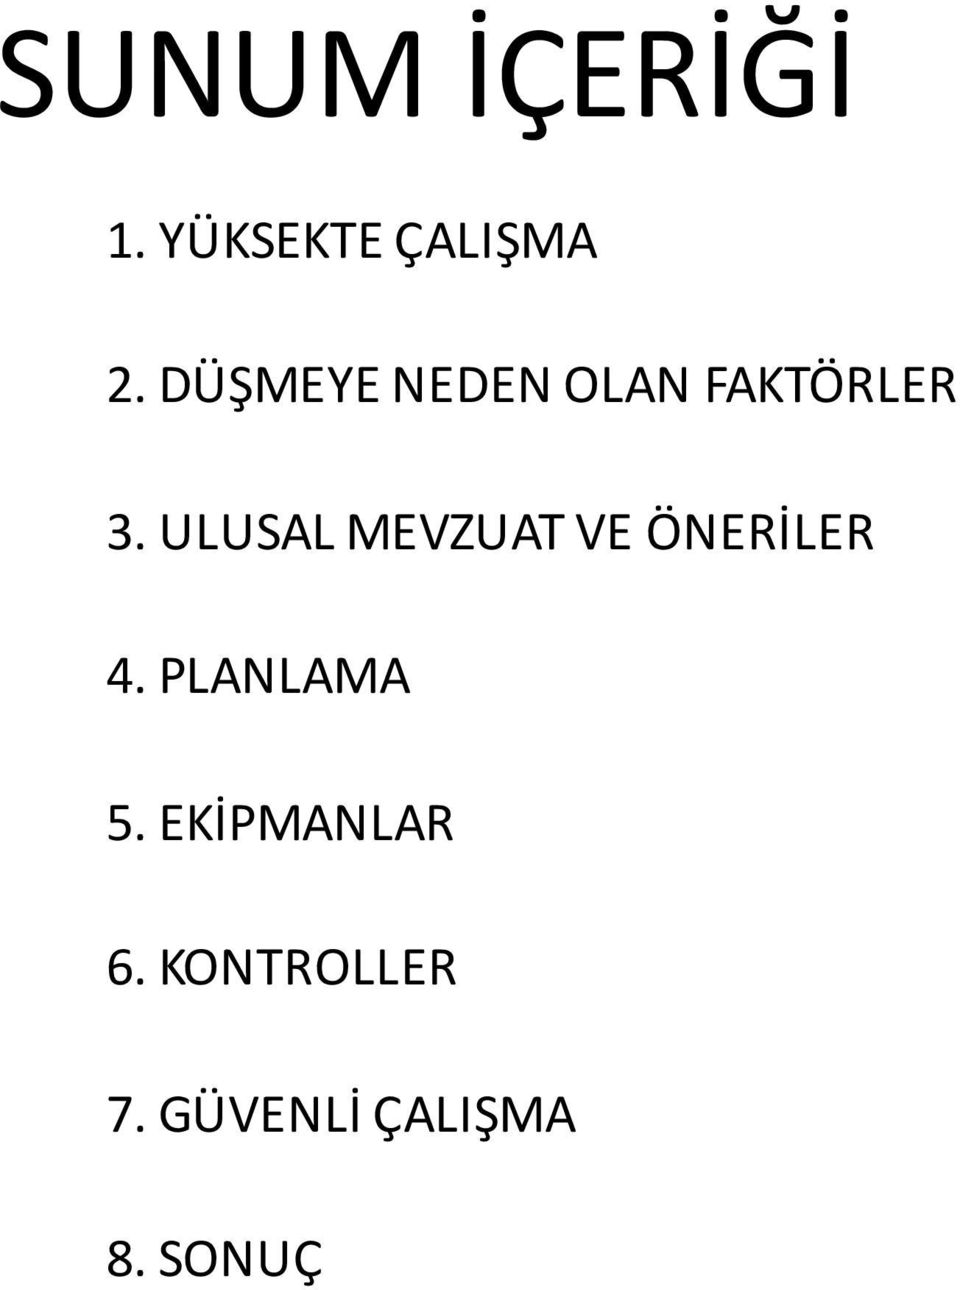 ULUSAL MEVZUAT VE ÖNERİLER 4. PLANLAMA 5.